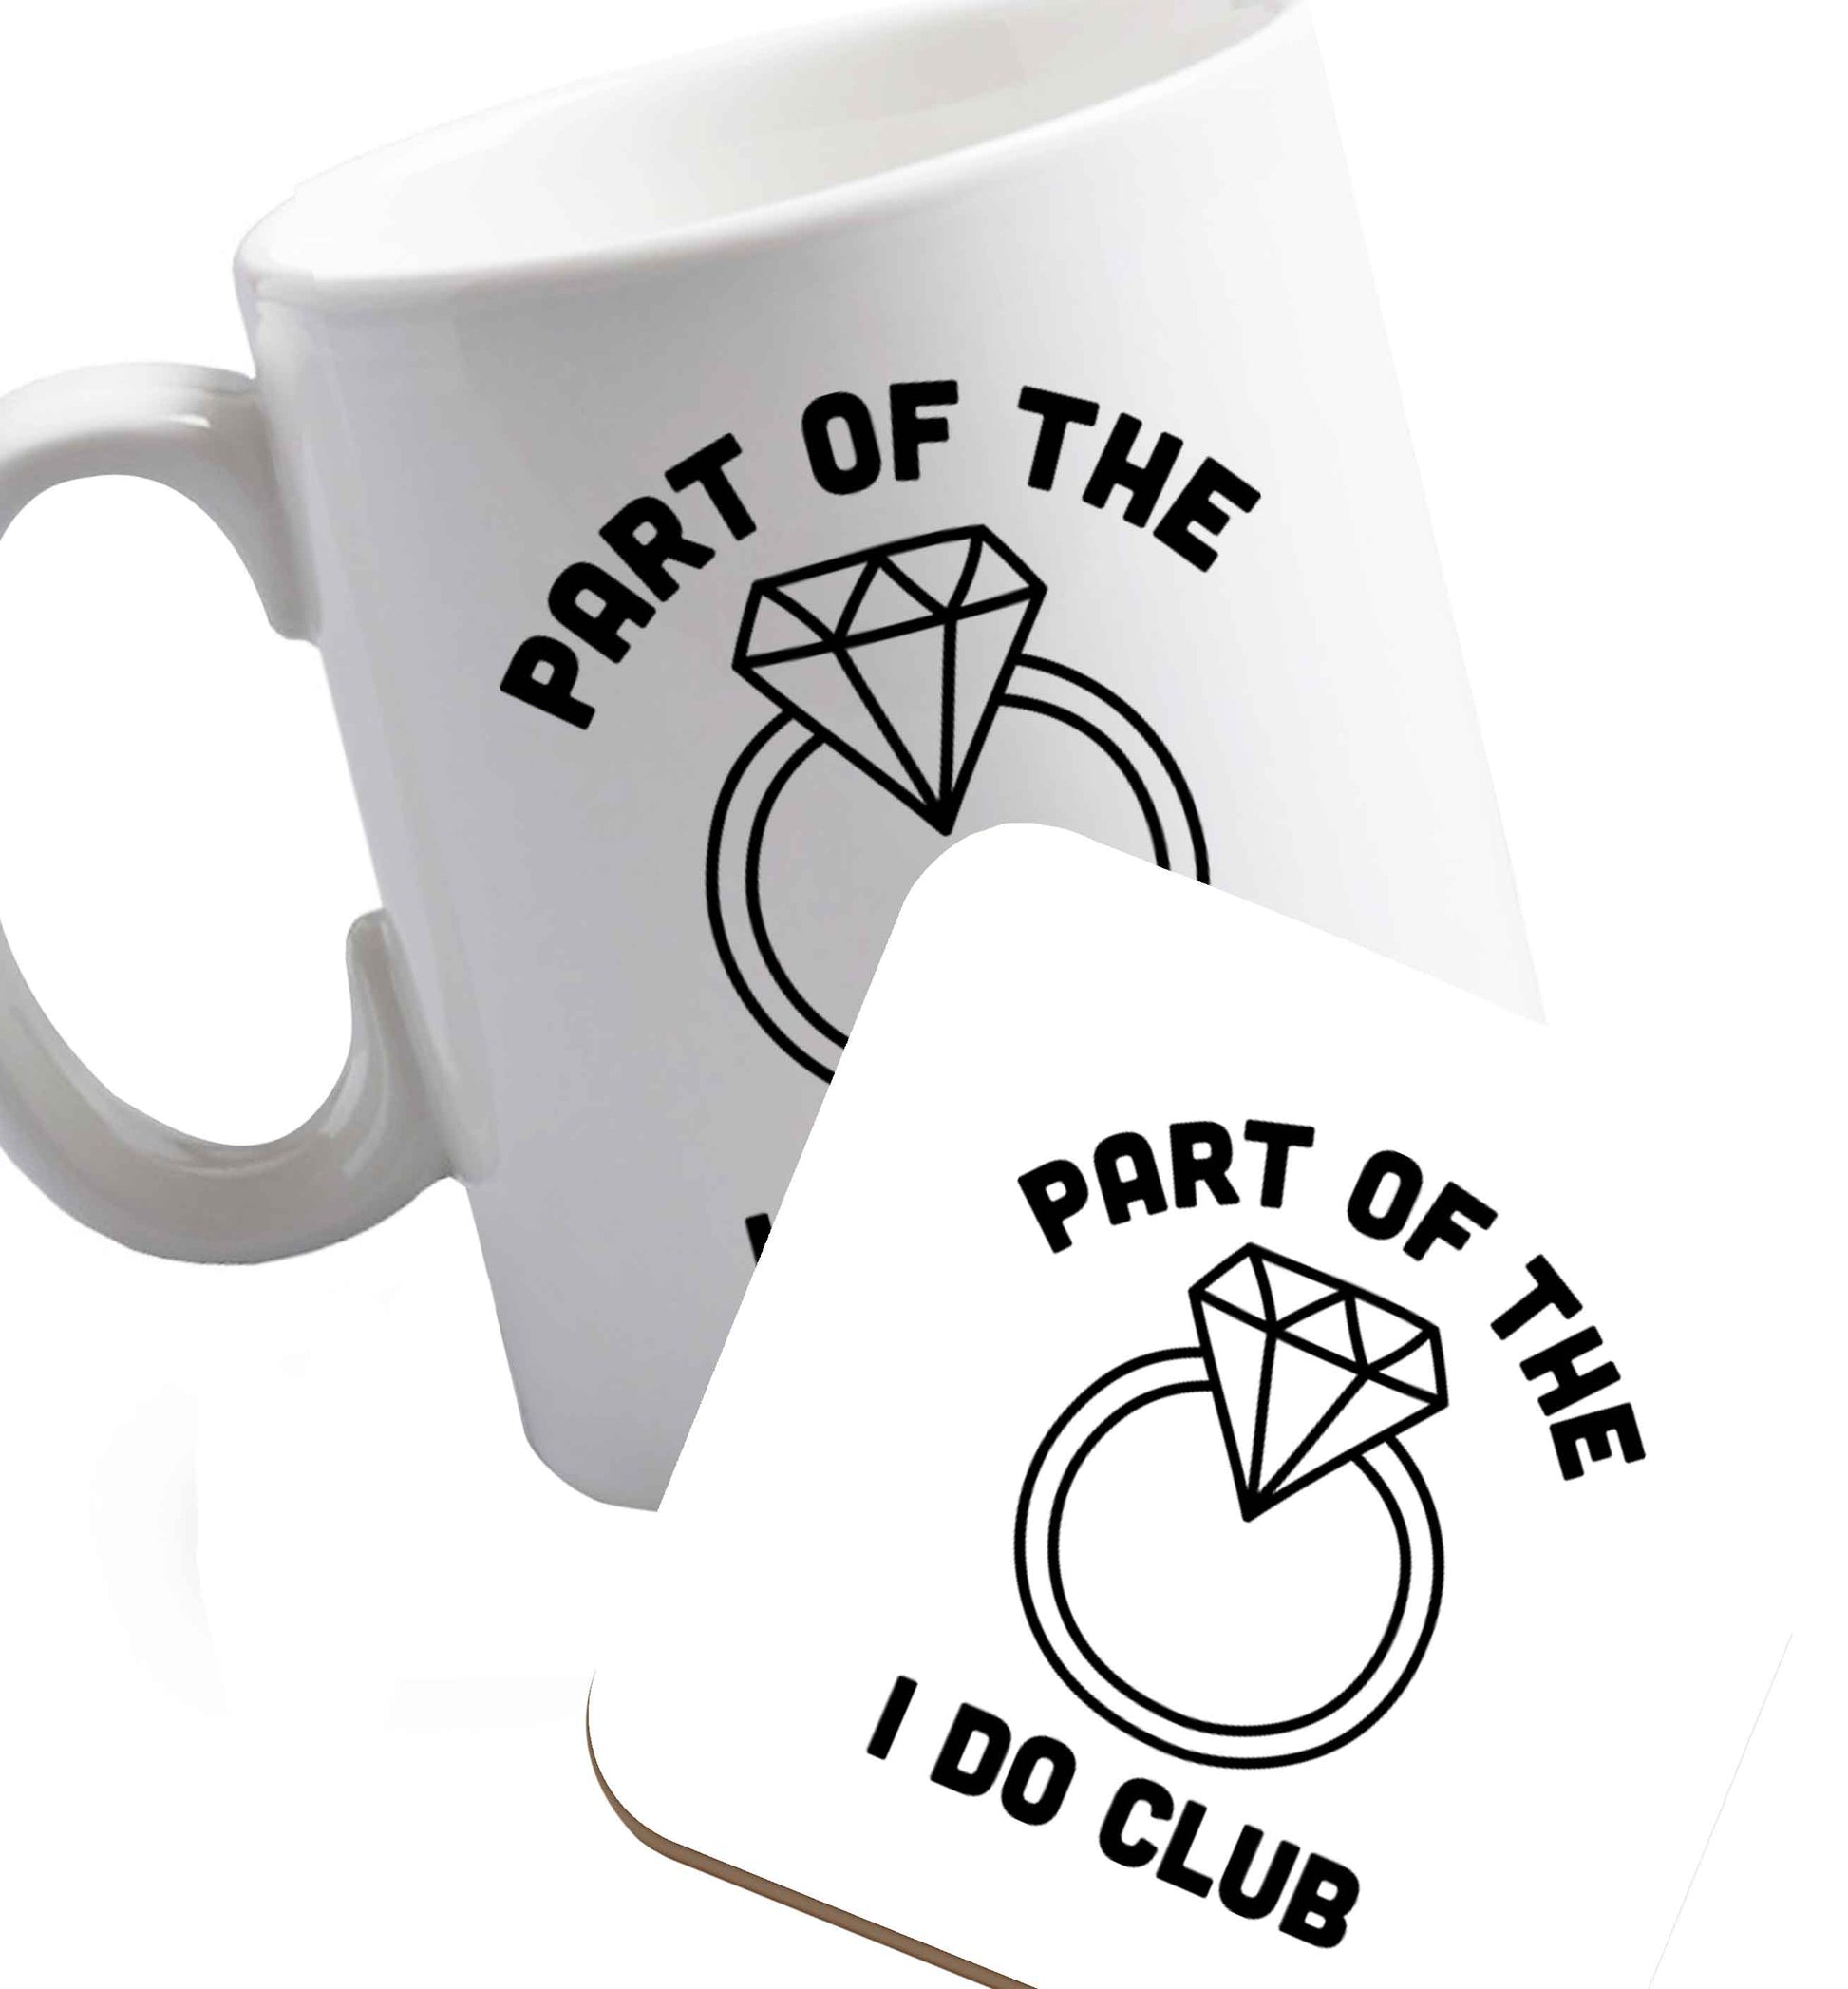 10 oz Part of the I do club   ceramic mug and coaster set right handed